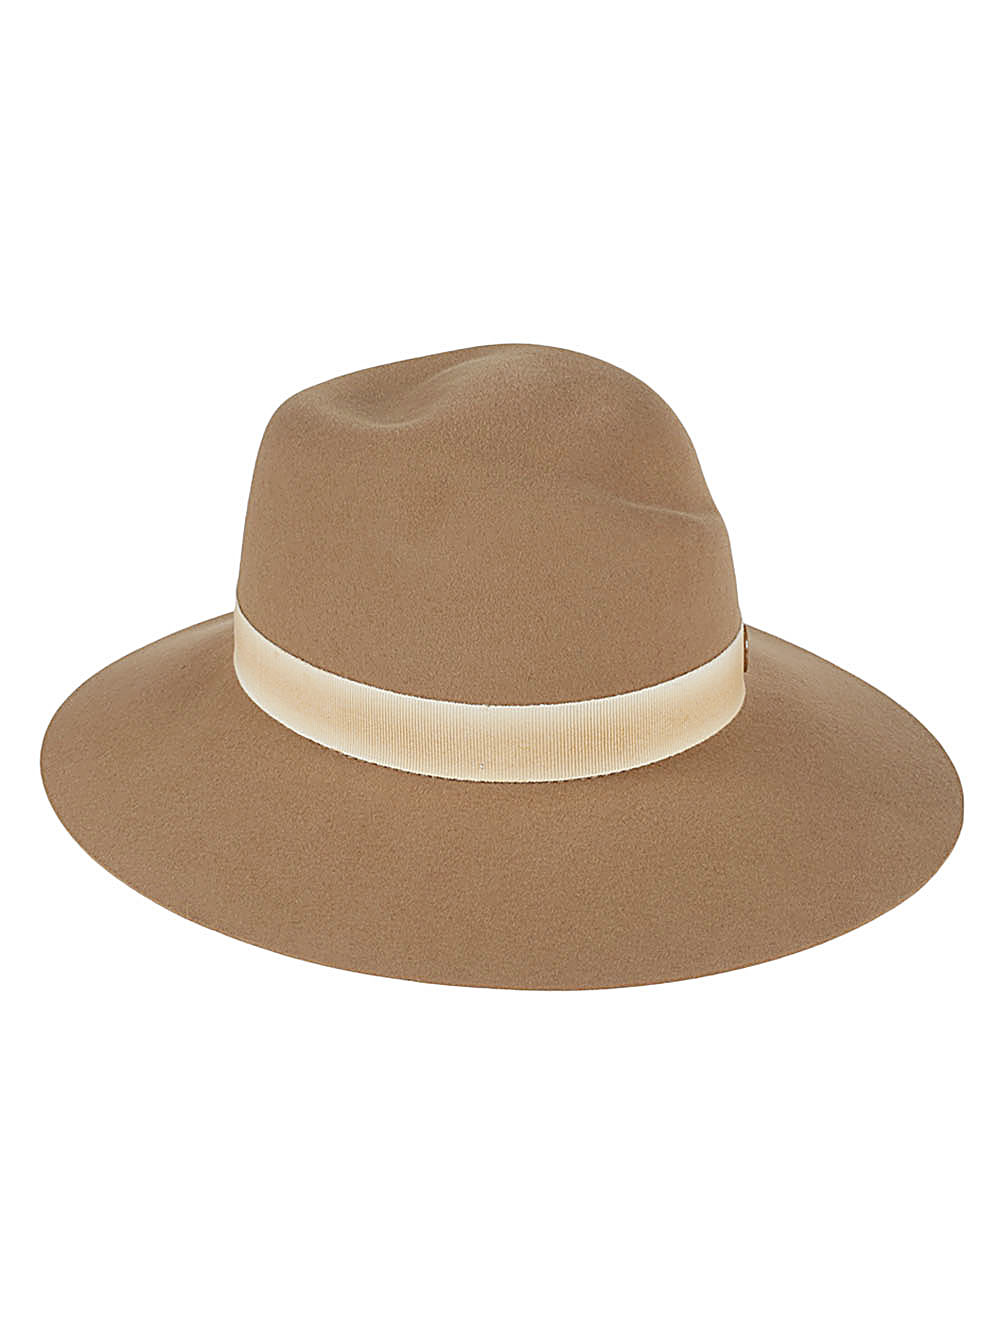 Maison Michel MAISON MICHEL- Virginie Rabbit Wool Fedora Hat